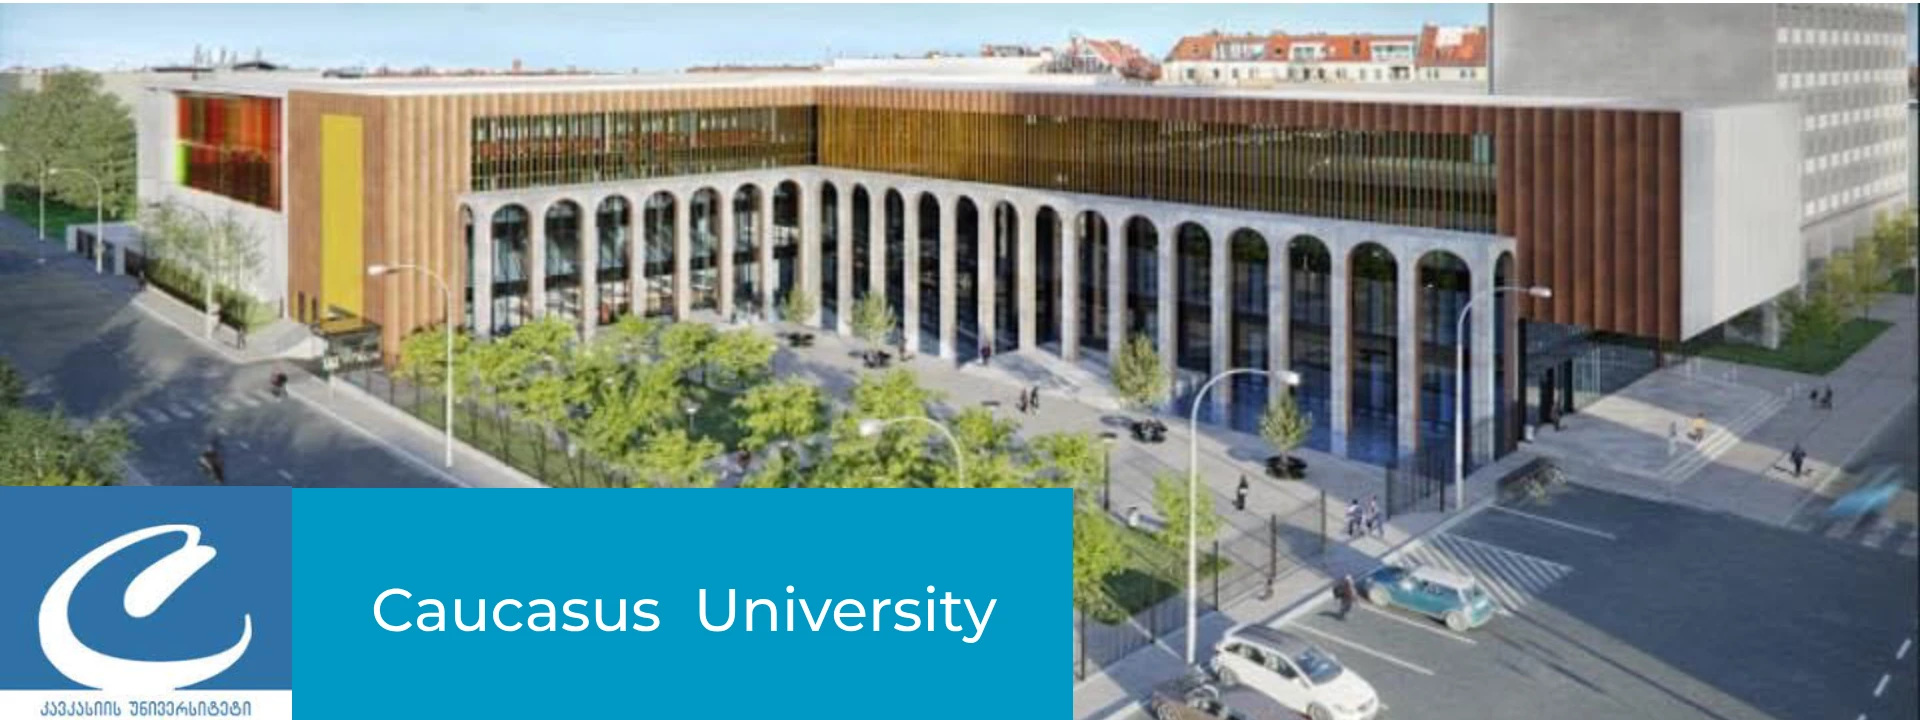 caucasus university 1